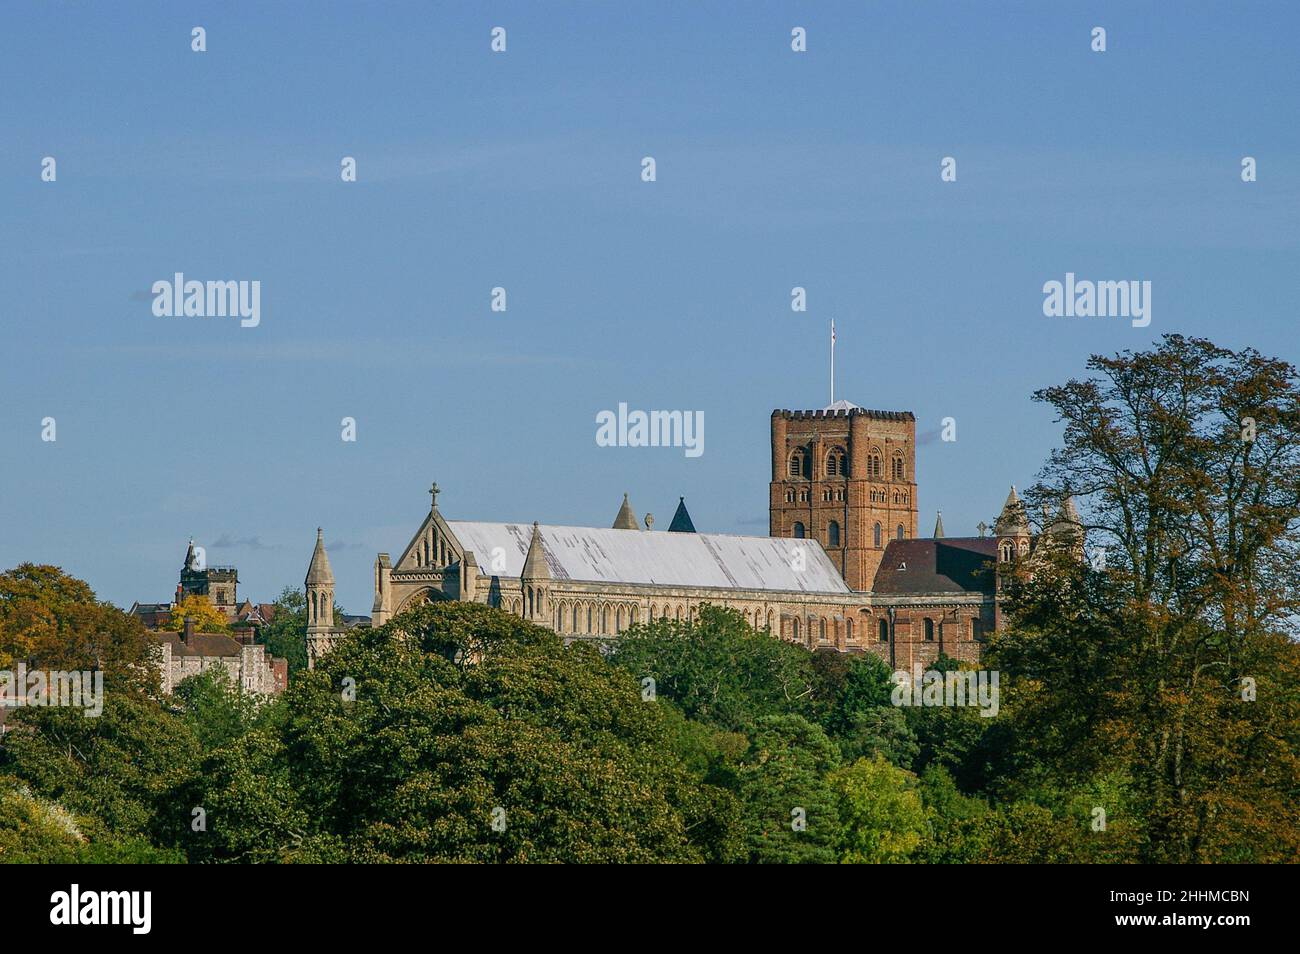 Vue sur la cathédrale St Albans depuis le parc Verulamium, St Albans, Hertfordshire, Royaume-Uni Banque D'Images